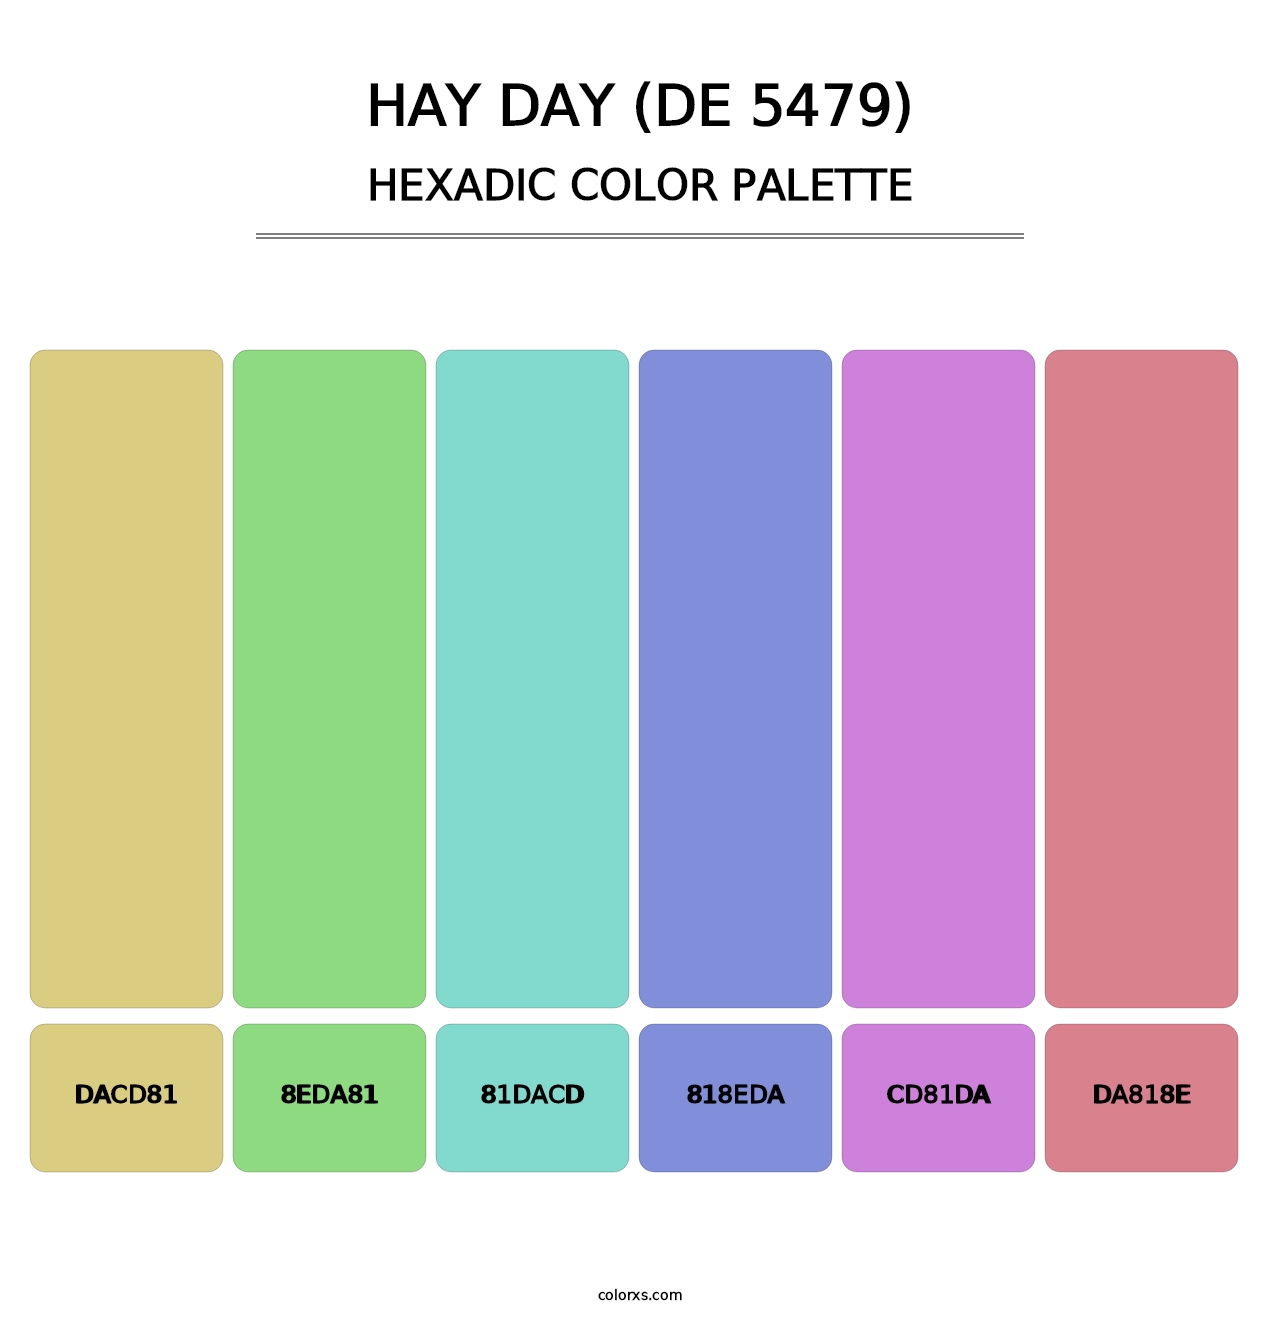 Hay Day (DE 5479) - Hexadic Color Palette